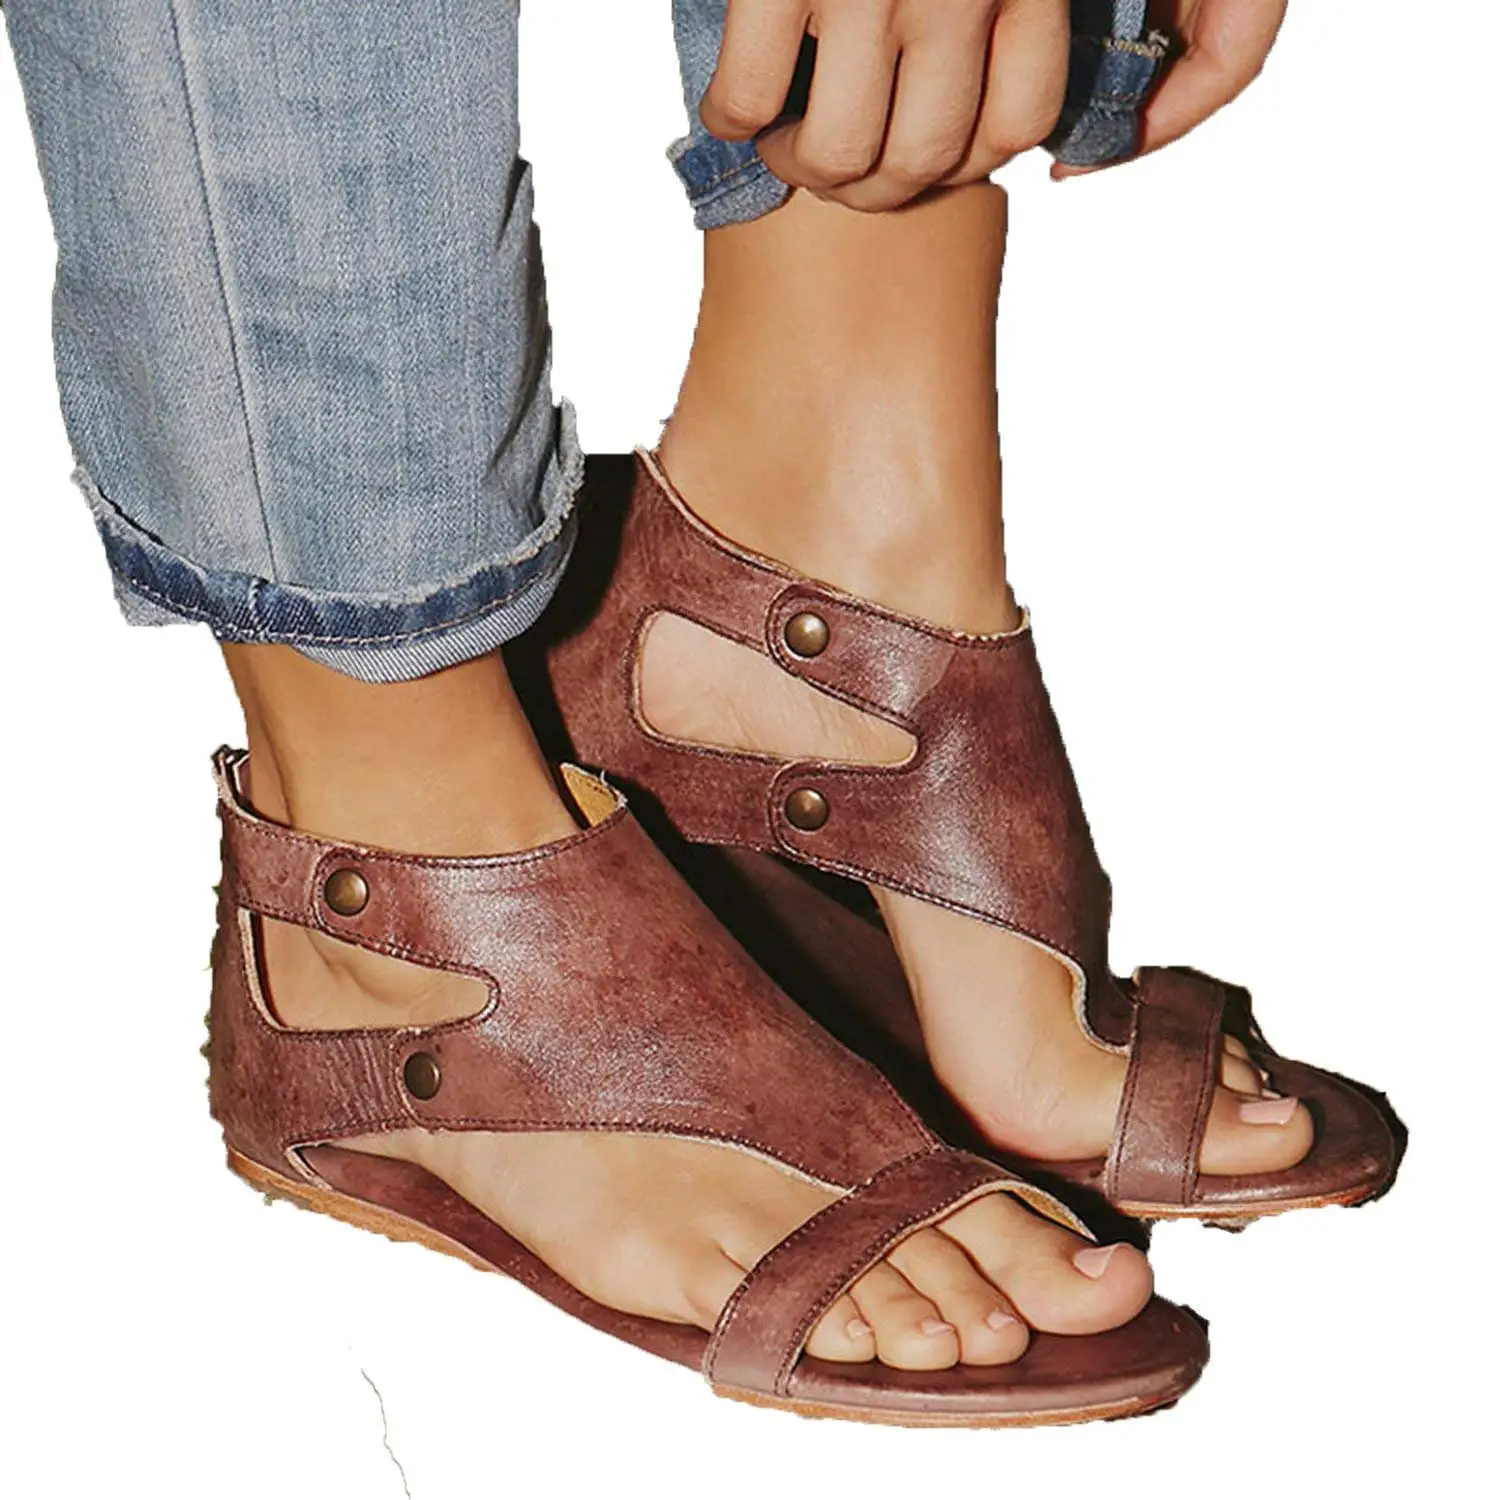 size 12 womens sandals cheap